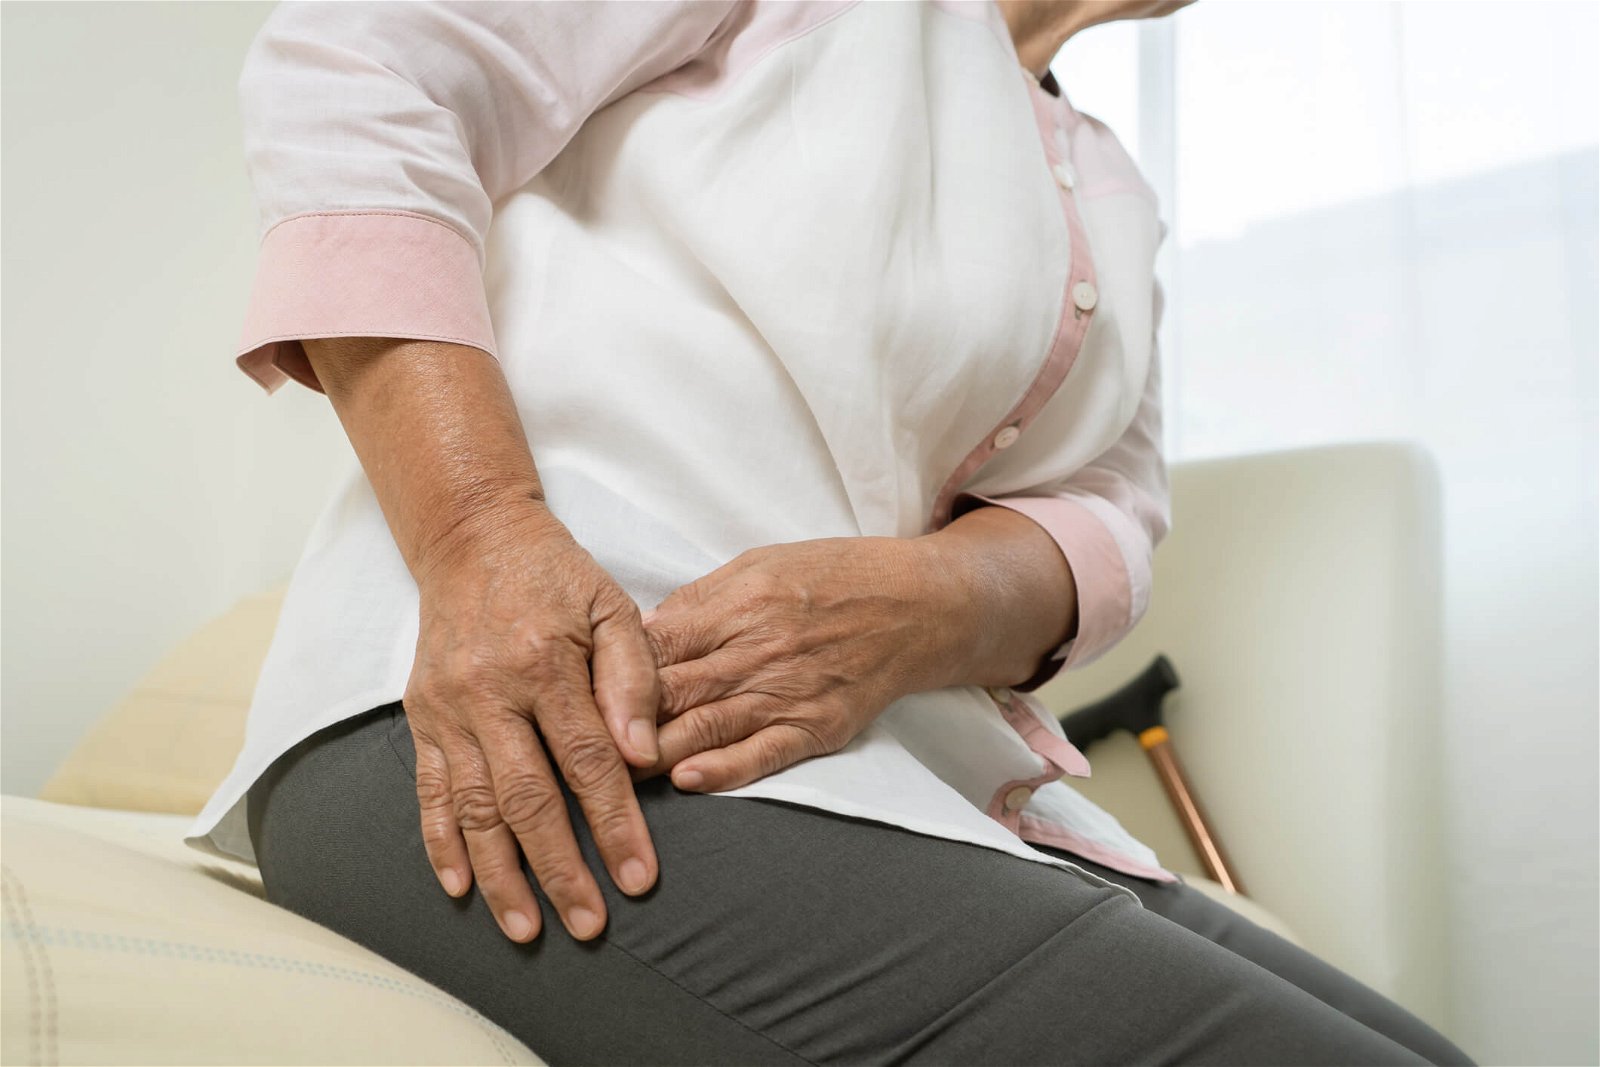 Kaj povzroča bolečine v kolku in stegnenici?